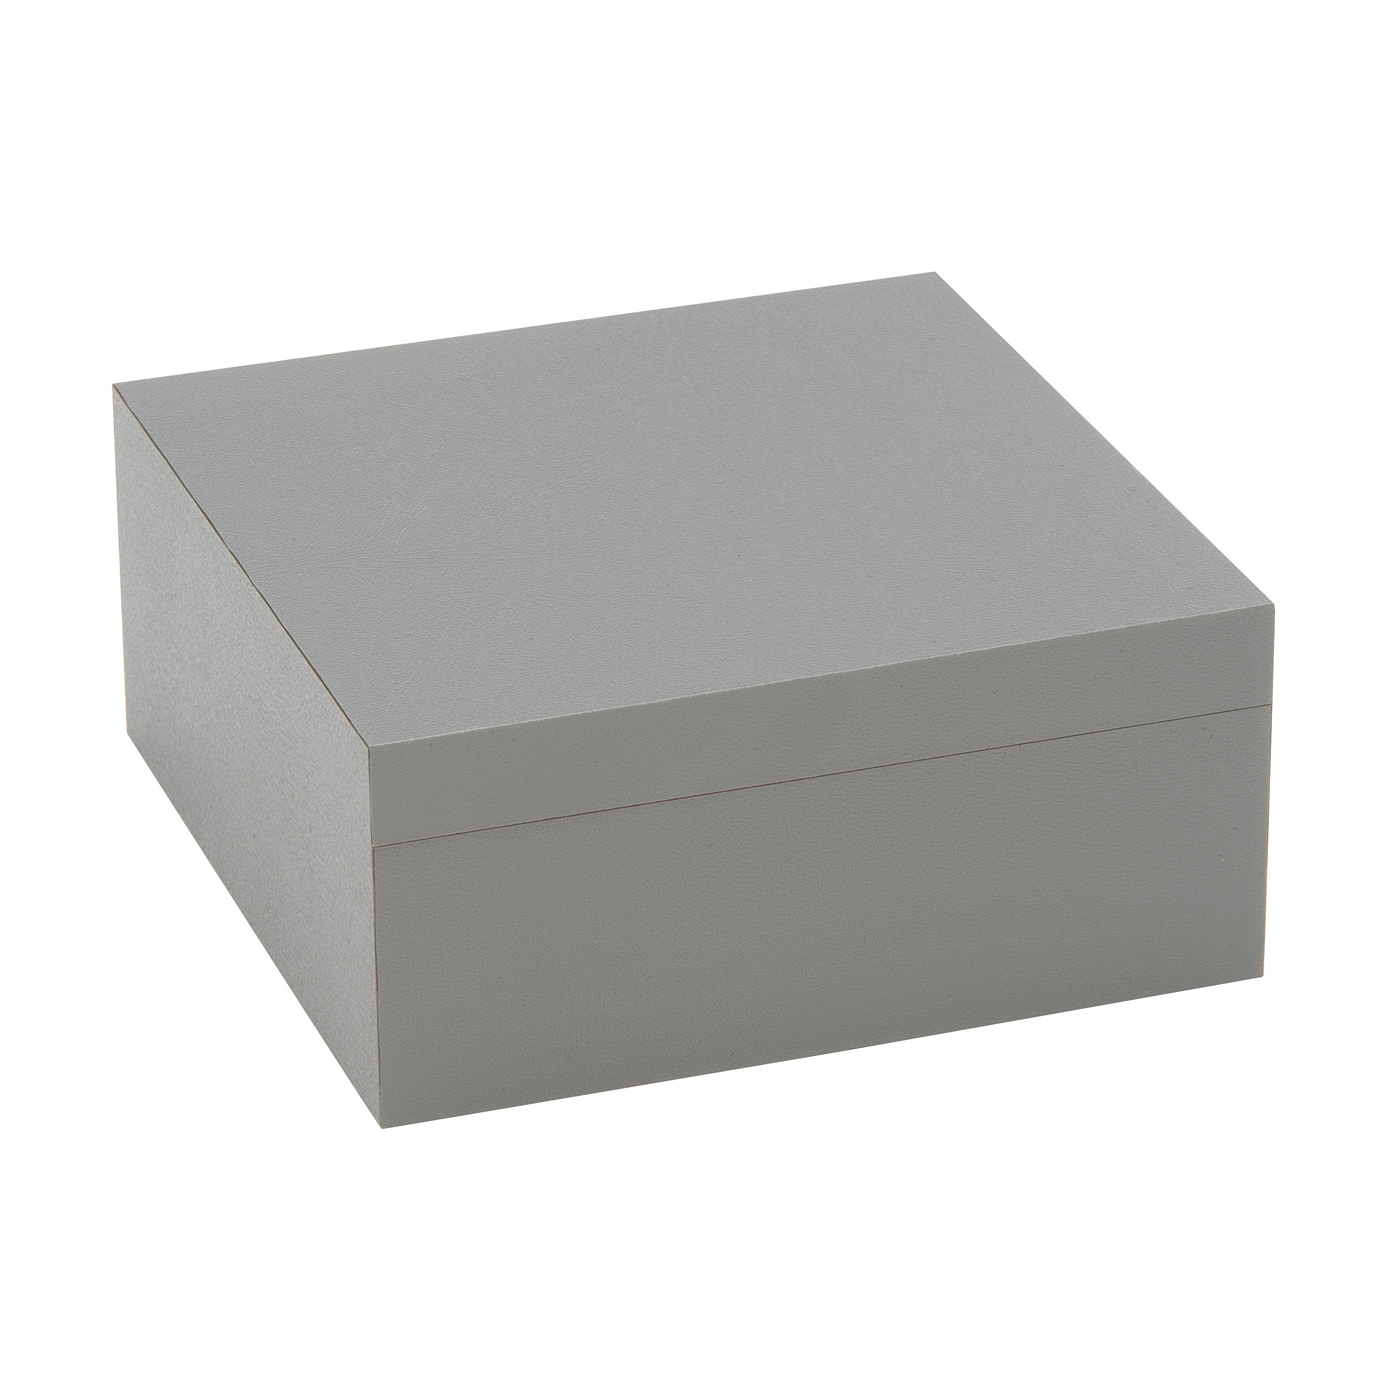 PICA-Design Schmucketui "Greybox", 90 x 90 x 40 mm - 1 Stück